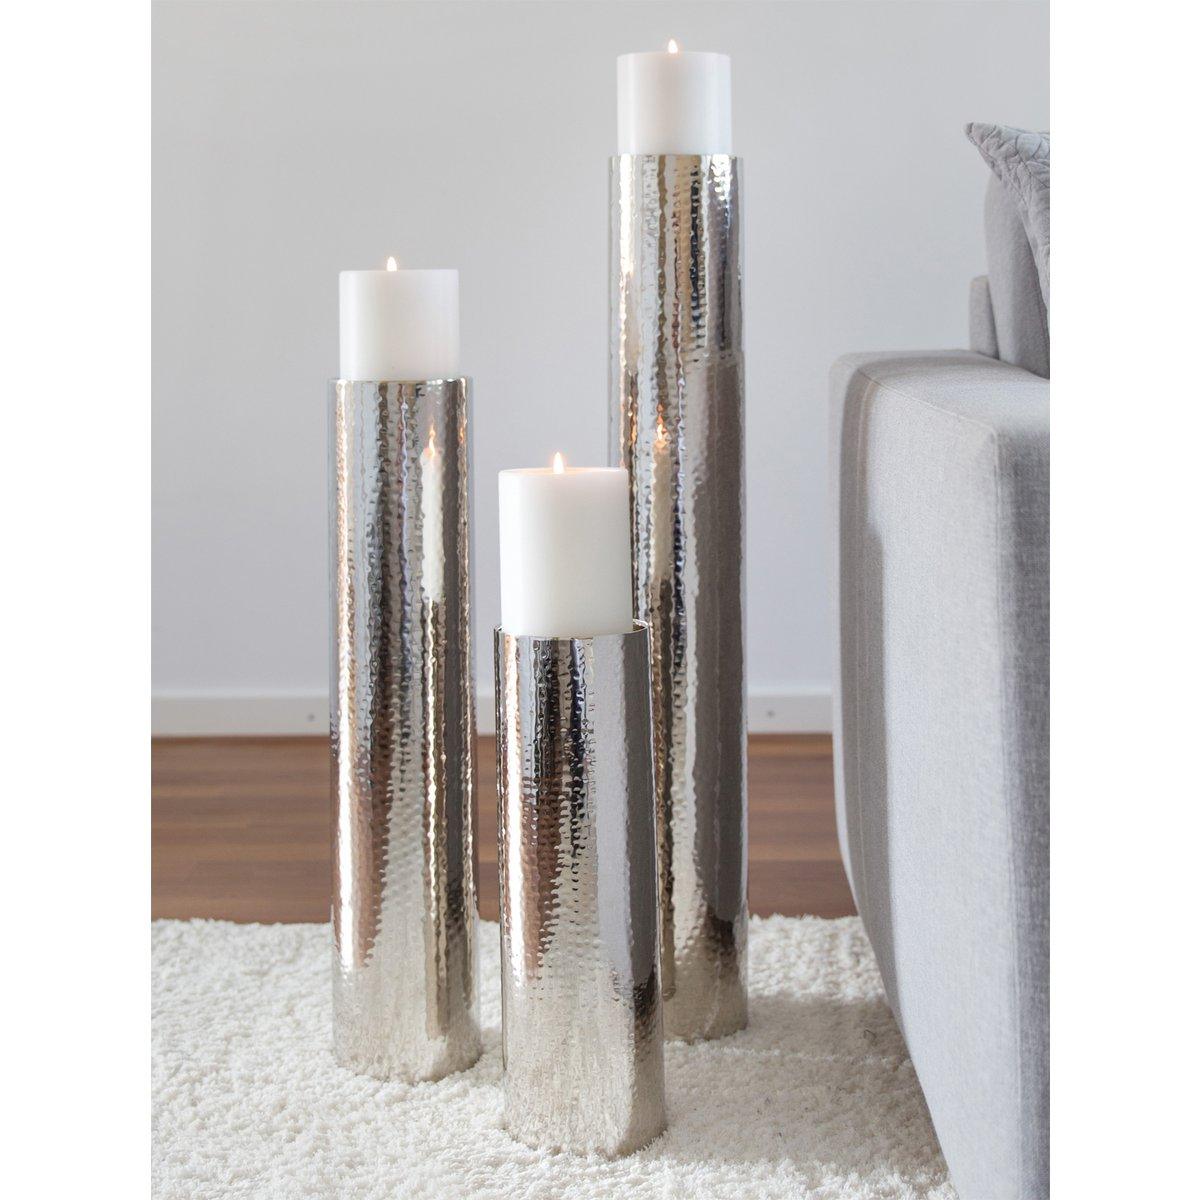 EDZARD Kerzenständer Boston für Kerze Durchmesser 10 cm, gehämmert, Edelstahl glänzend vernickelt, H 60 cm - HomeDesign Knaus